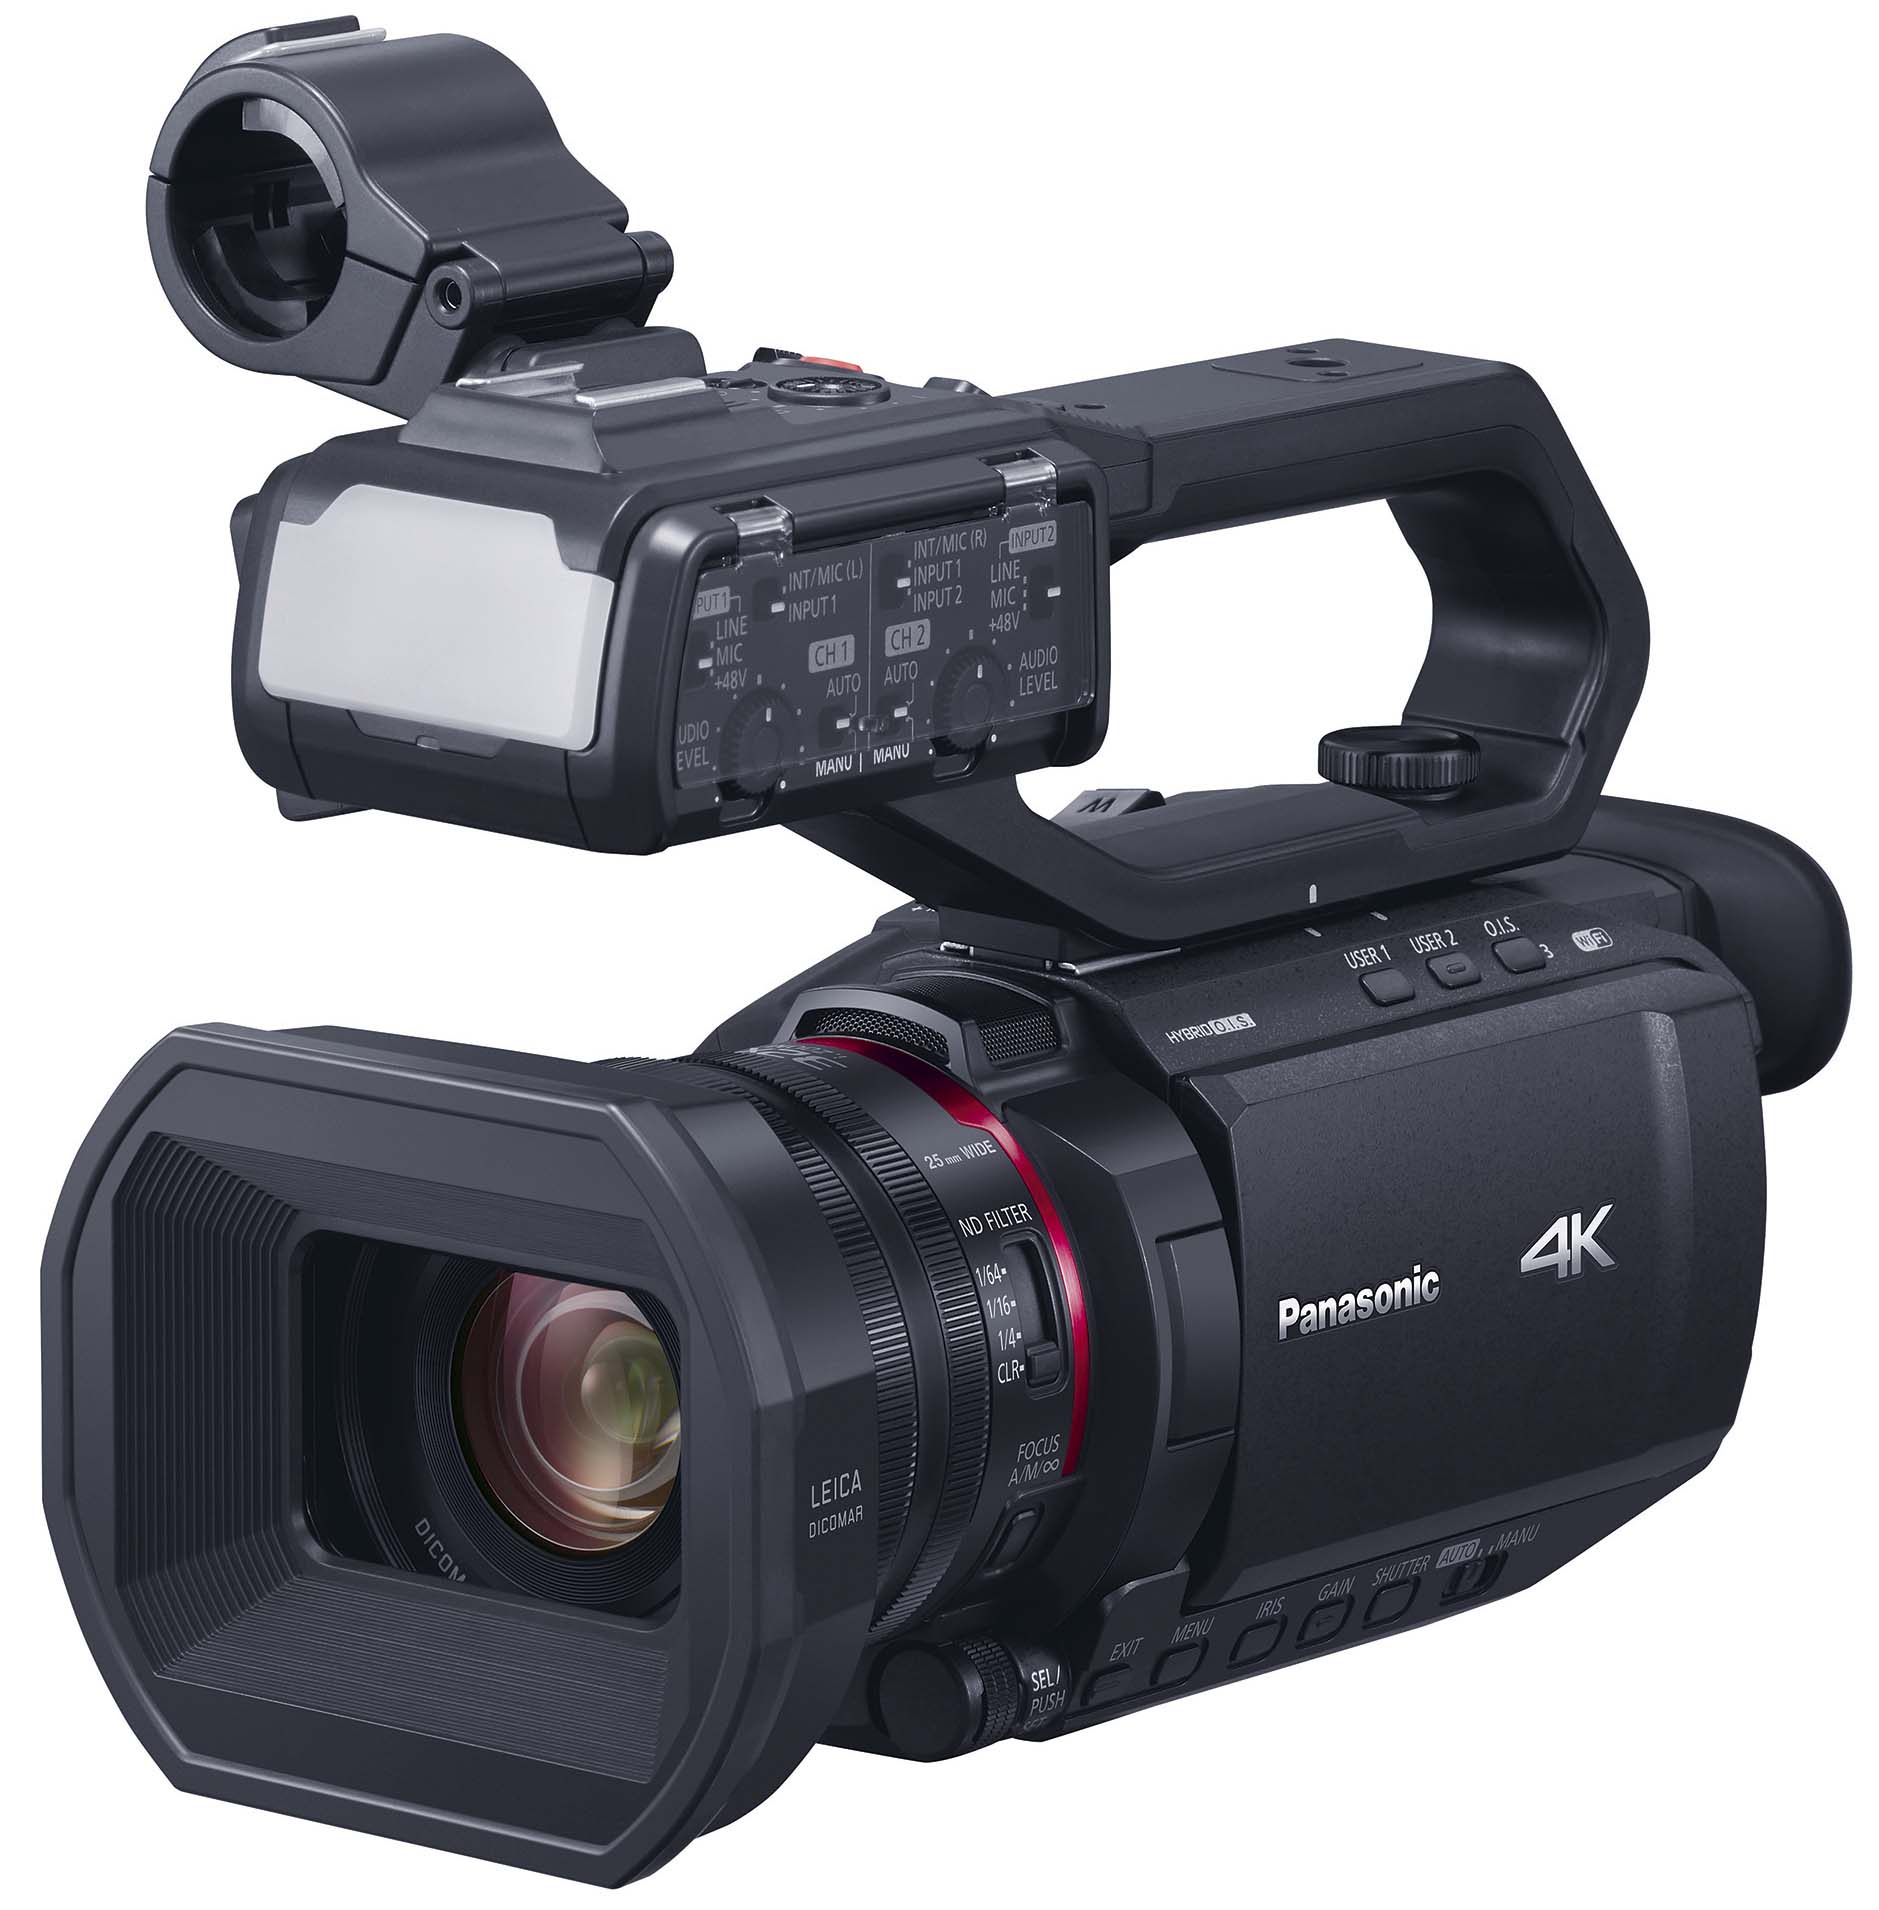 パナソニック、10bit 4K/60p内部記録対応のビデオカメラ2モデルを3月19